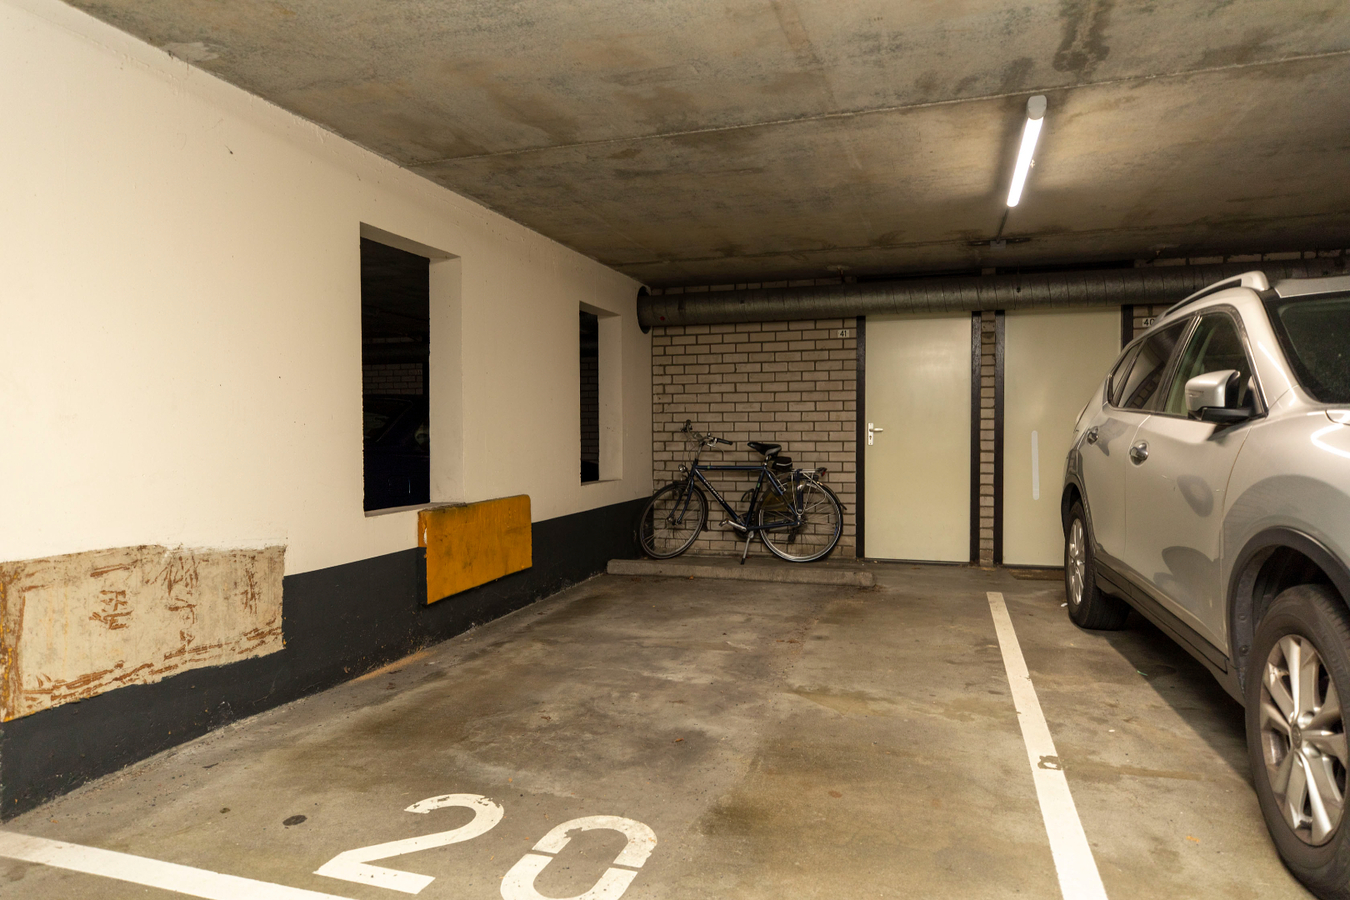 3-kamer appartement met een eigen parkeerplaats in de garage! 